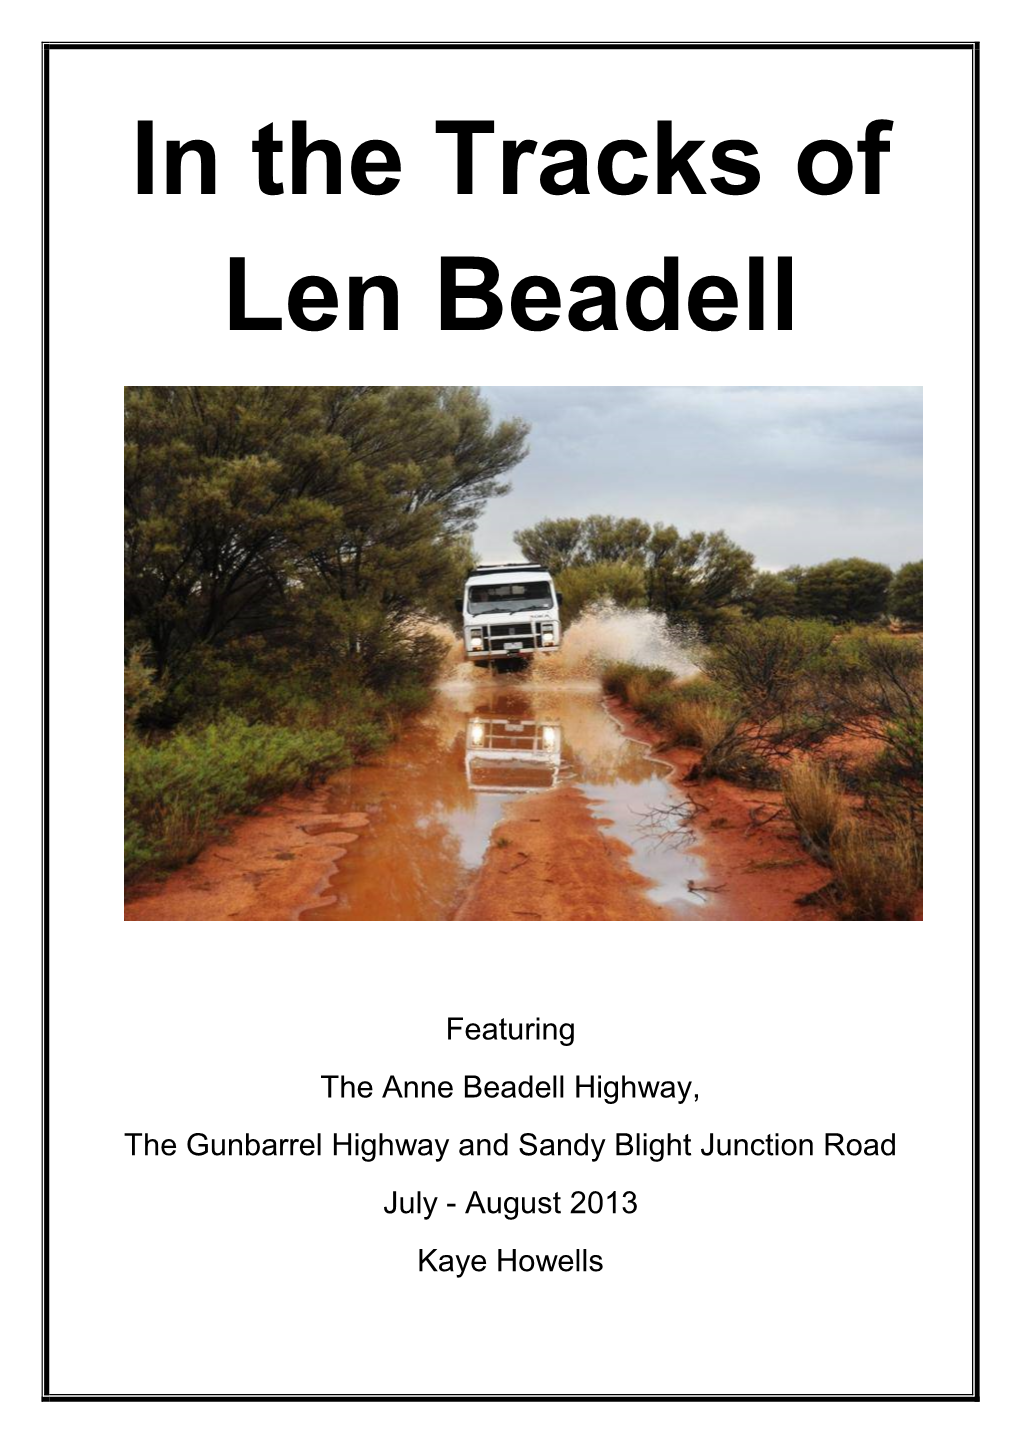 In the Tracks of Len Beadell